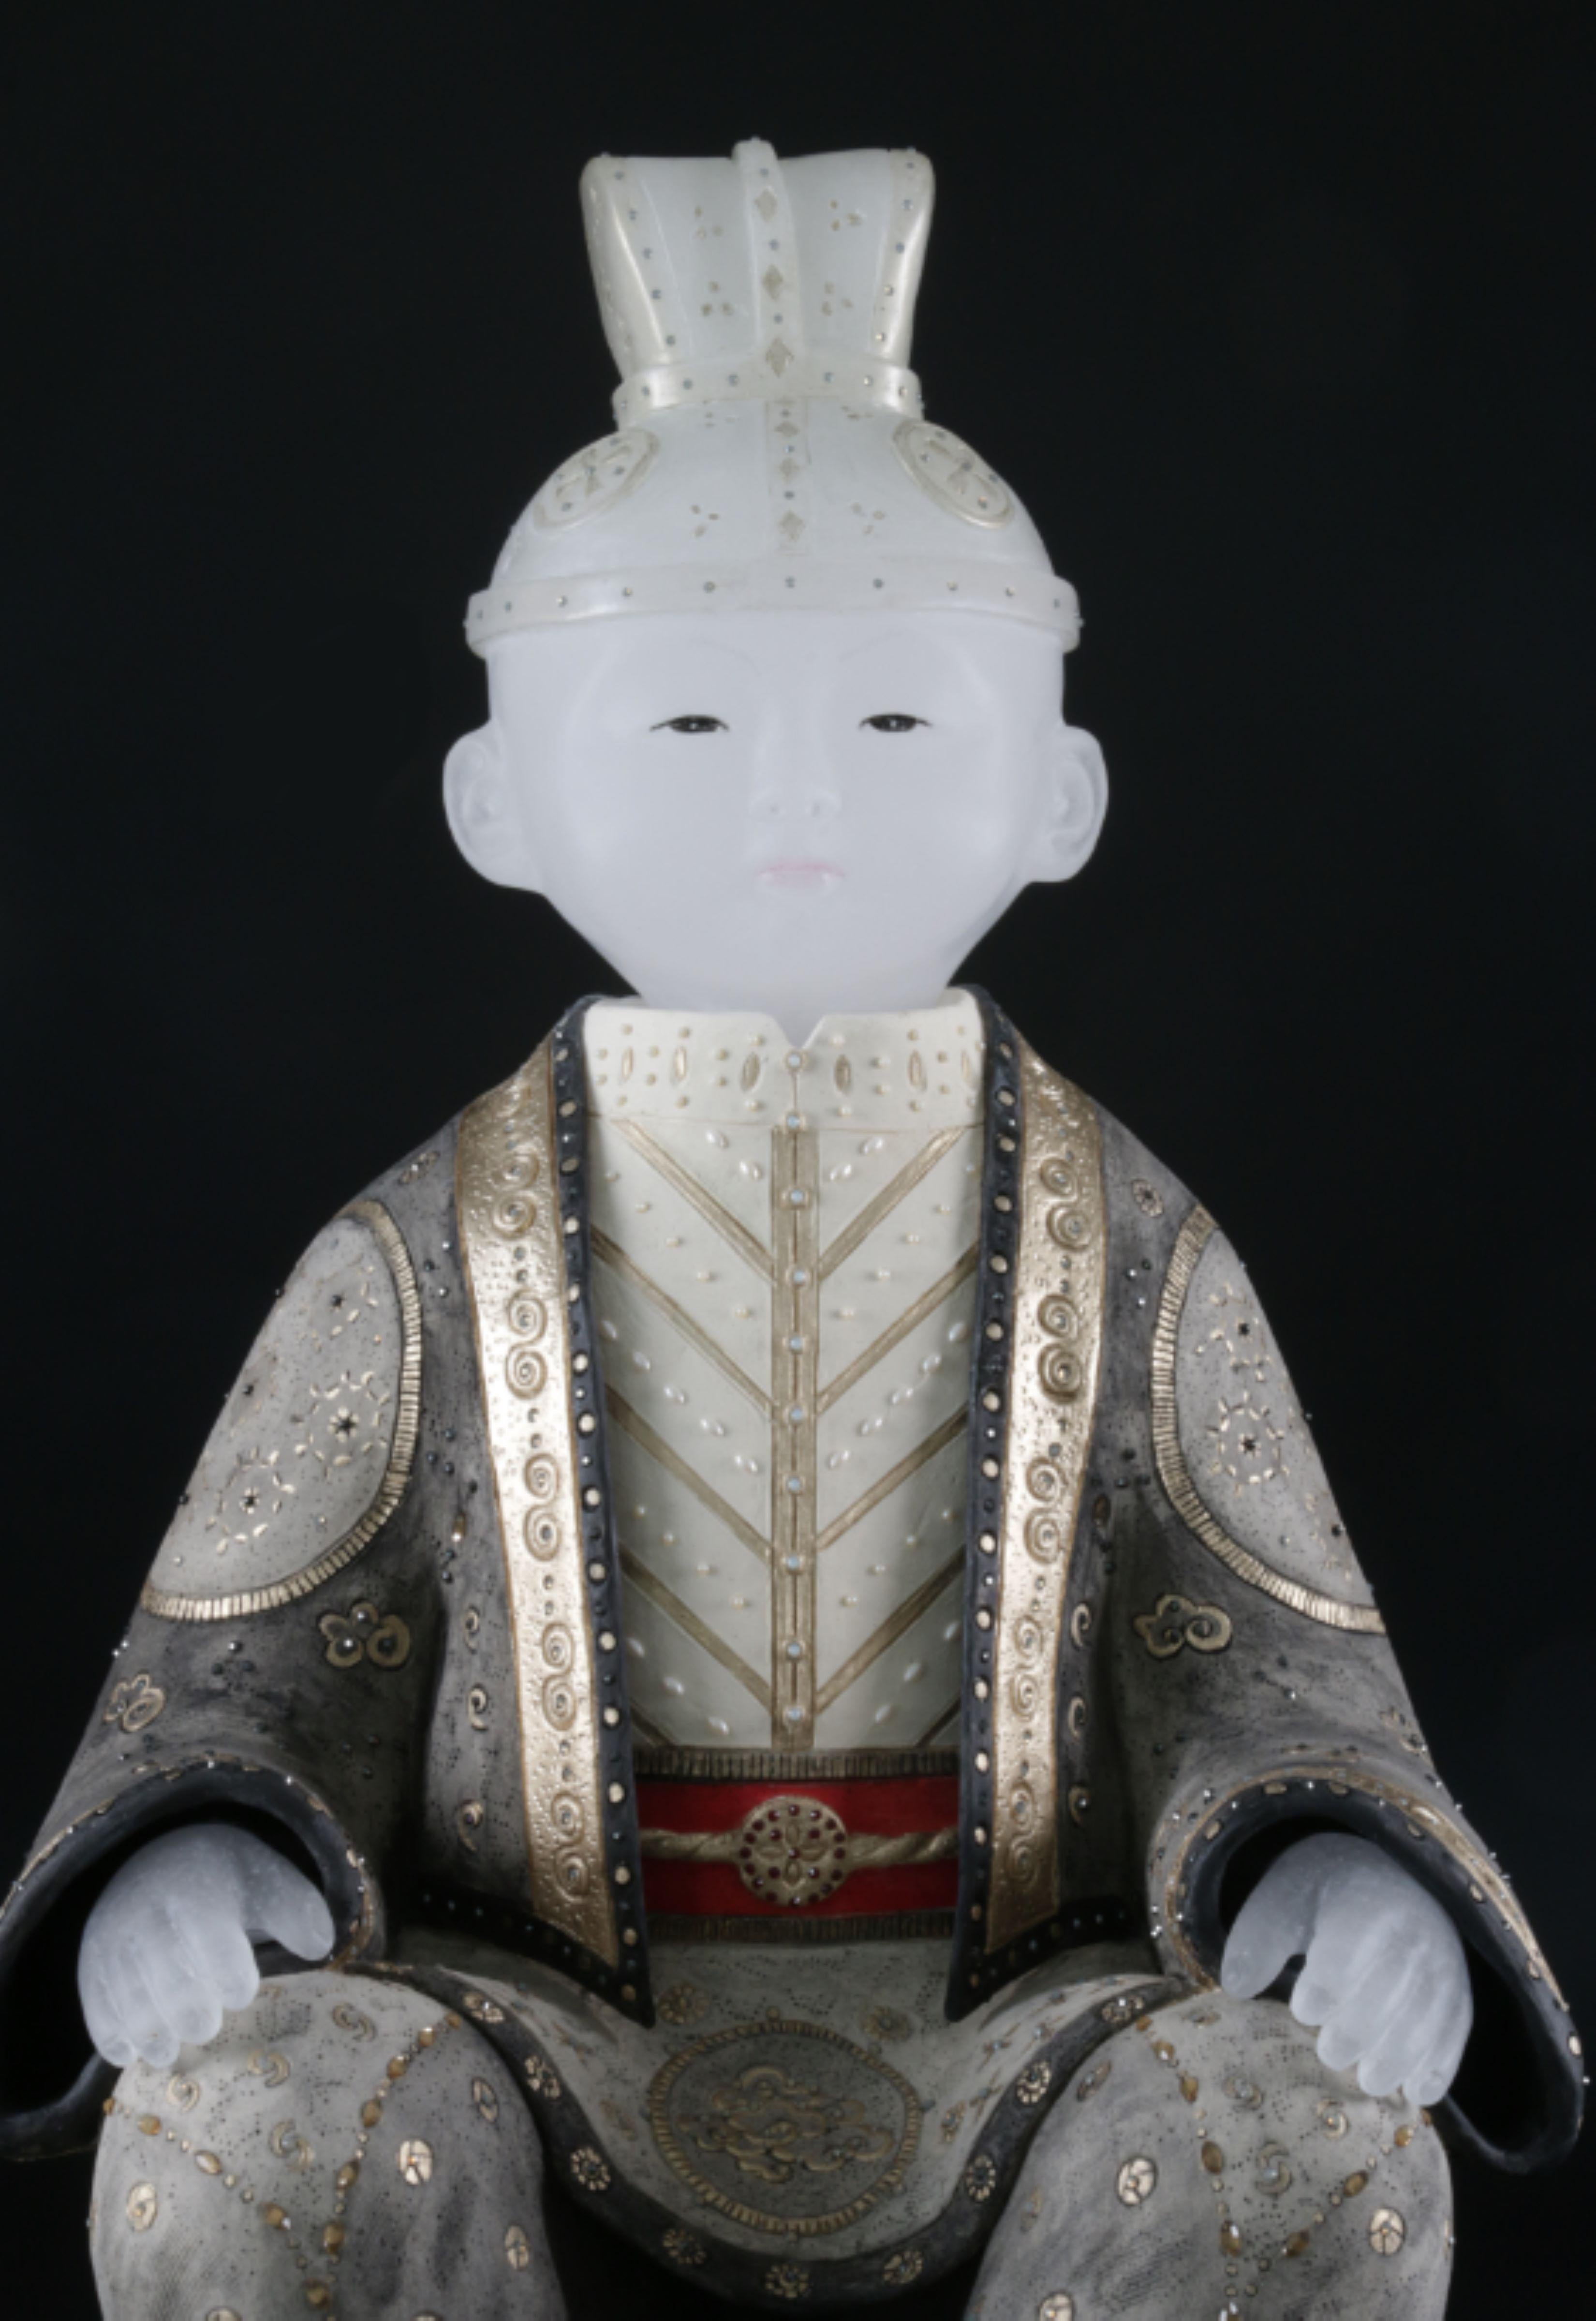 CELESTIAL stellt einen sehr jungen Jungen im Stil einer Gosho-Puppe dar. Die Inspiration für dieses Stück stammt von den Gosho-Puppen, die während der Edo-Periode in Japan (1603-1867) hergestellt wurden, einer Zeit, in der die Künste blühten. Sie